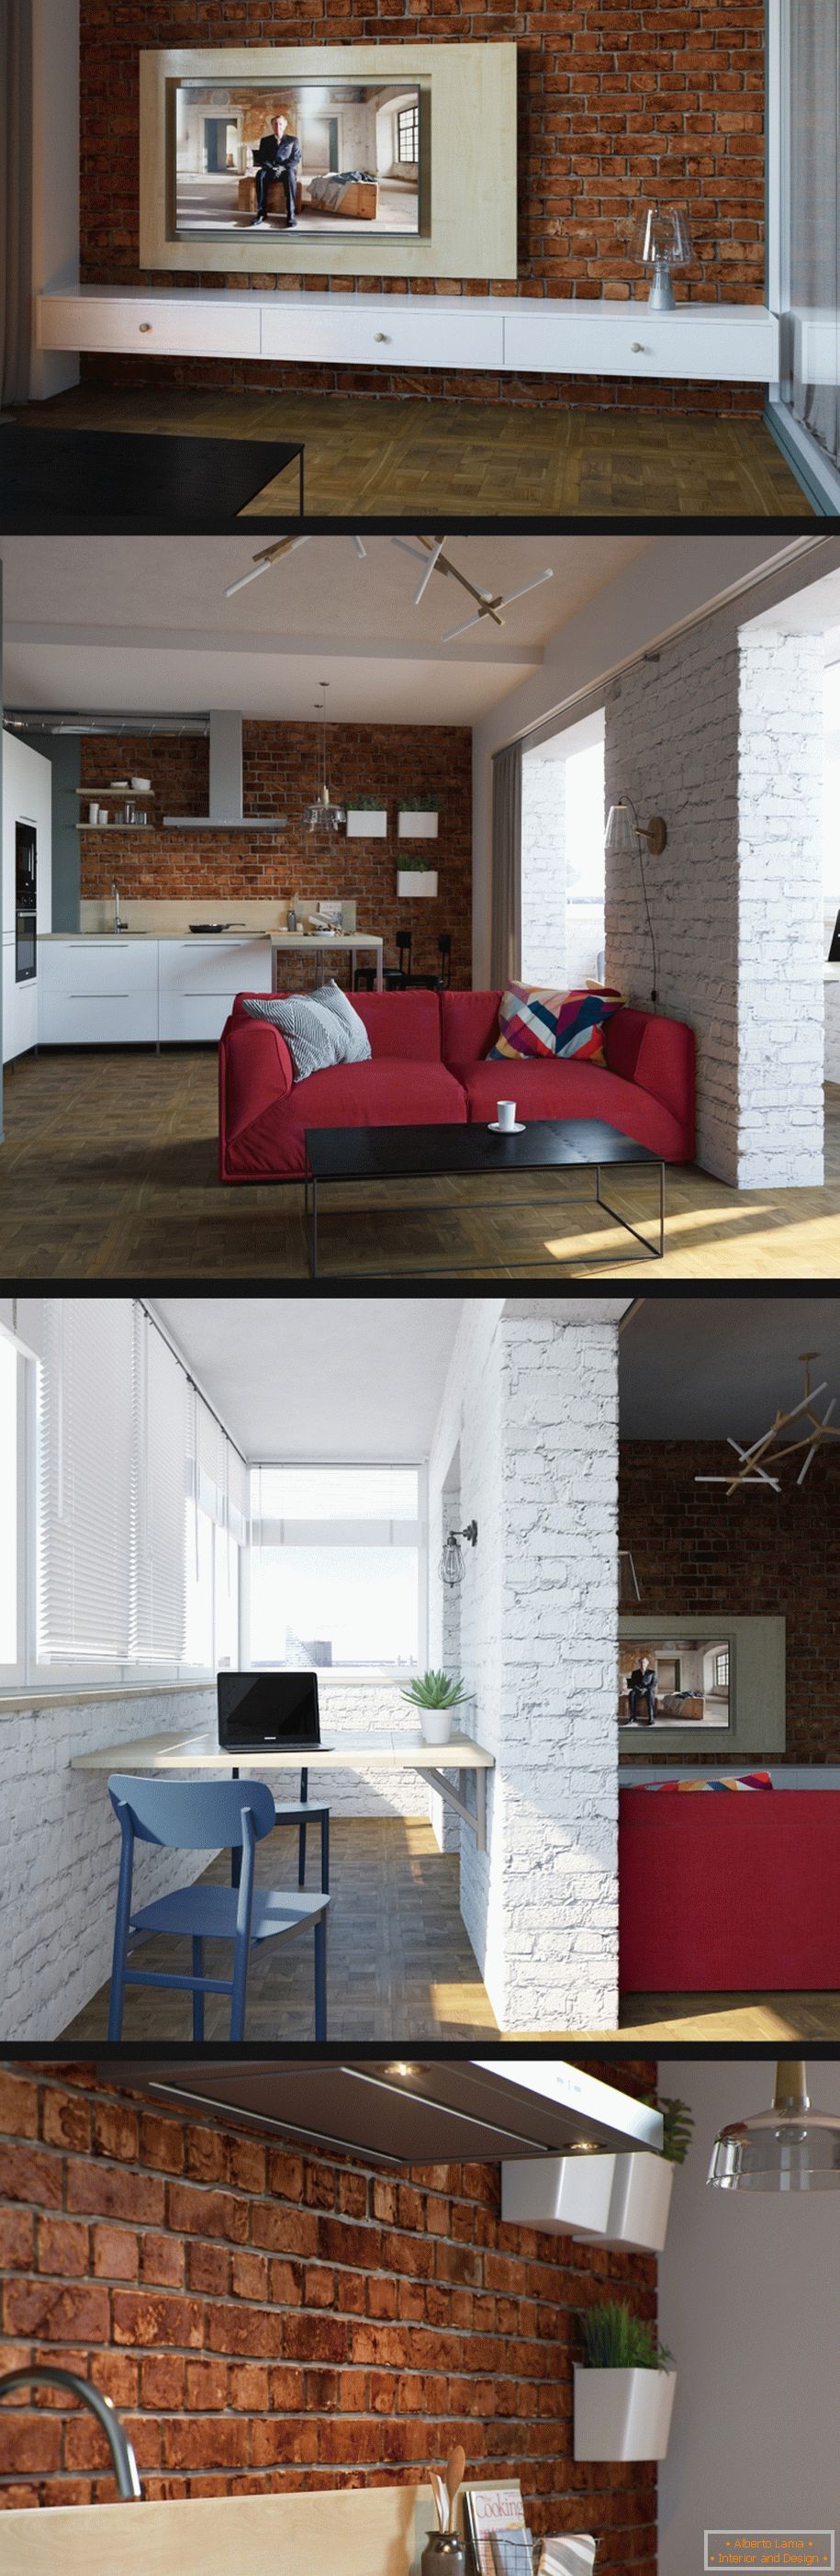 Primer notranje opreme majhne dnevne sobe na fotografiji